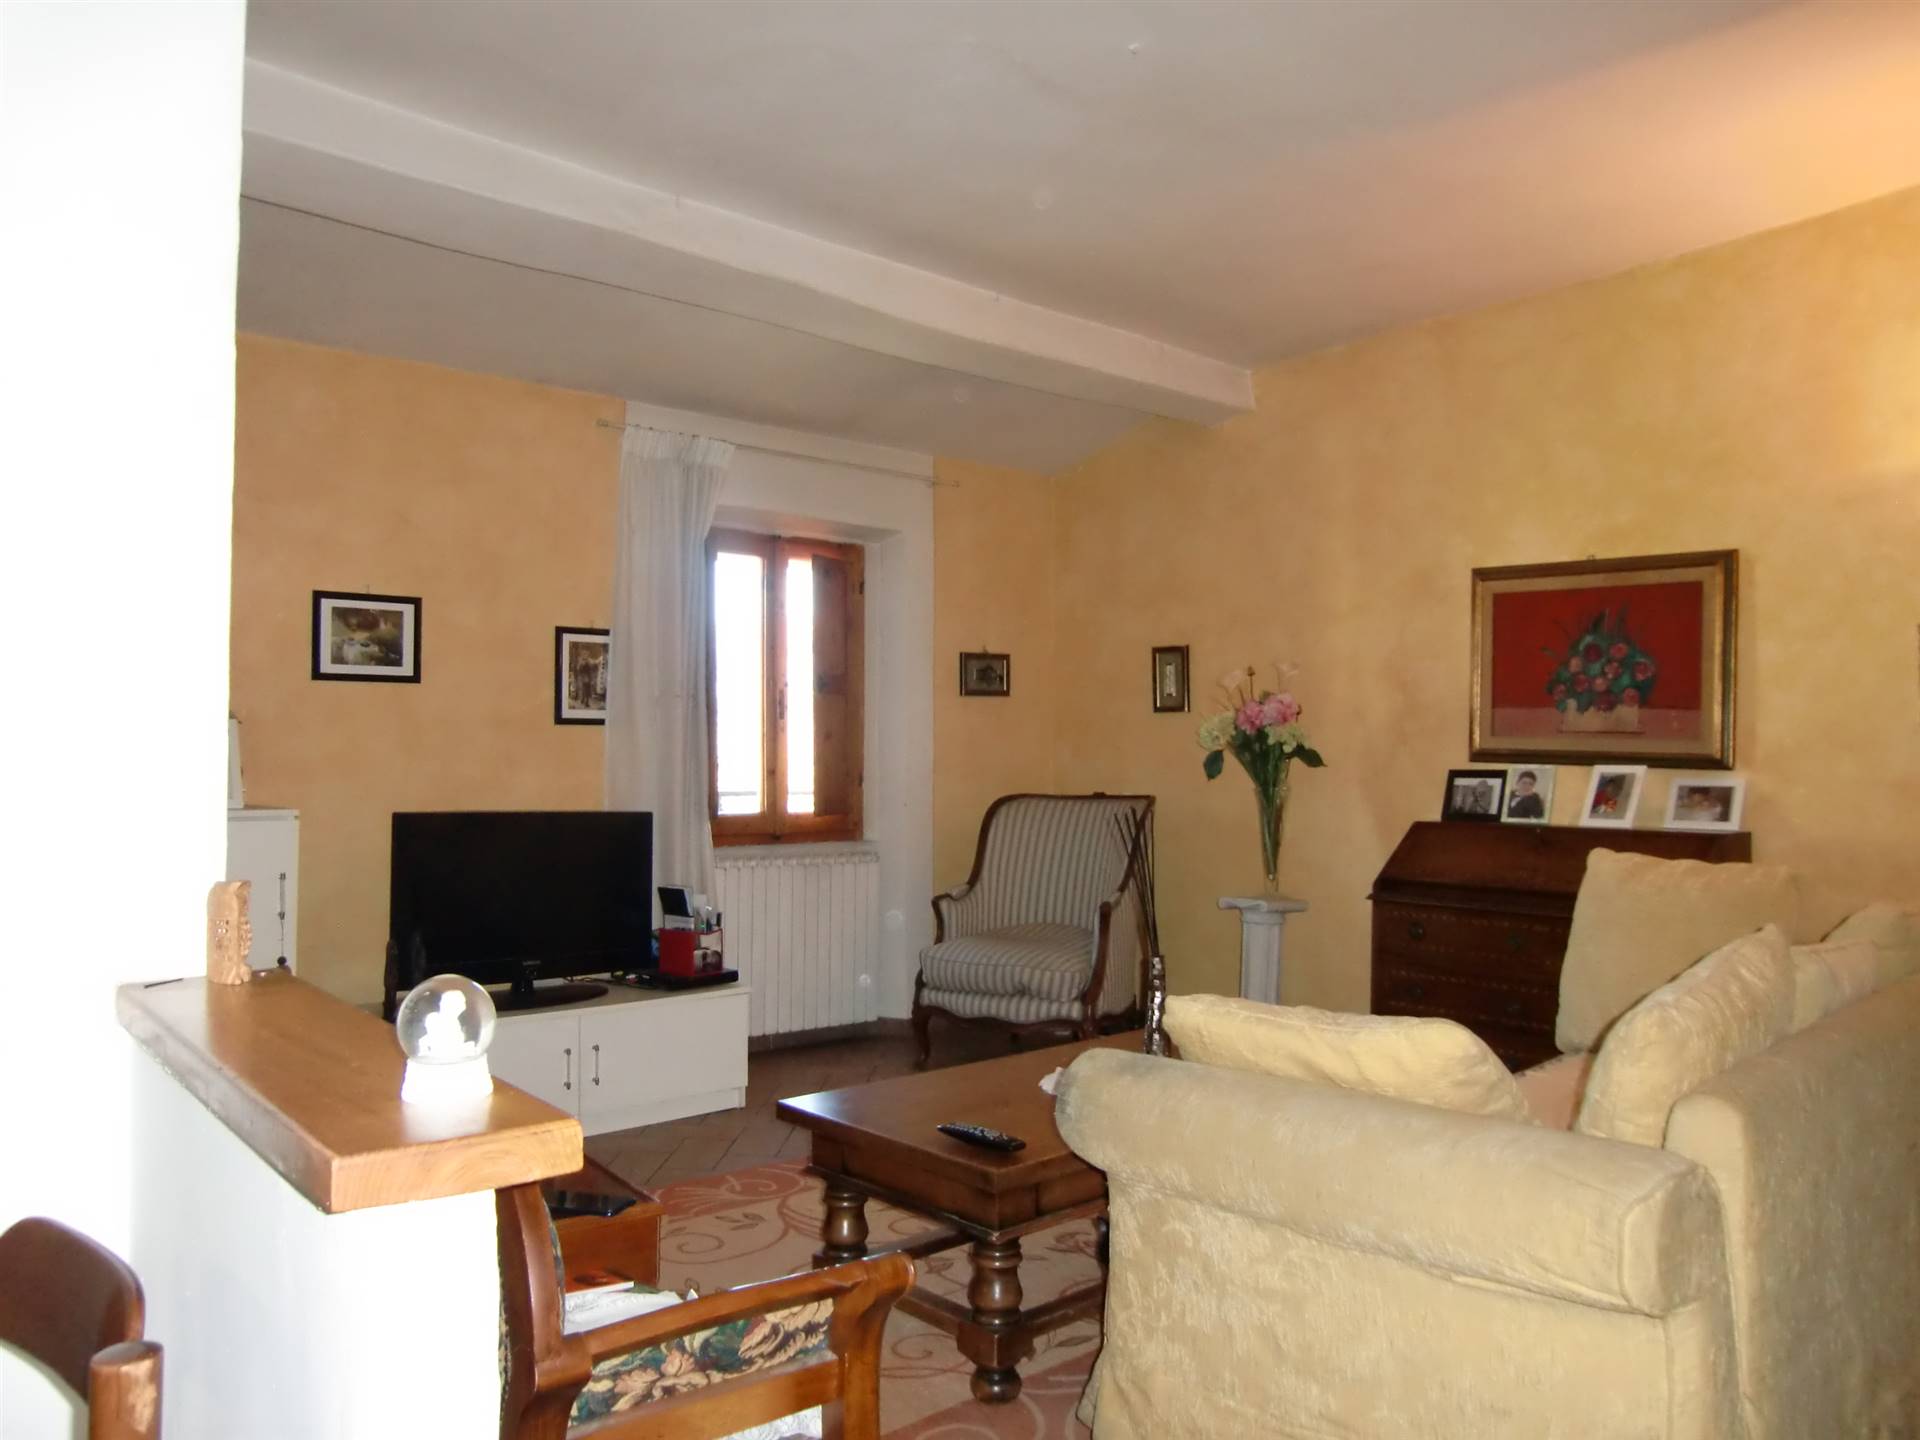 Appartamento in vendita a San Giovanni Valdarno, 7 locali, prezzo € 125.000 | PortaleAgenzieImmobiliari.it